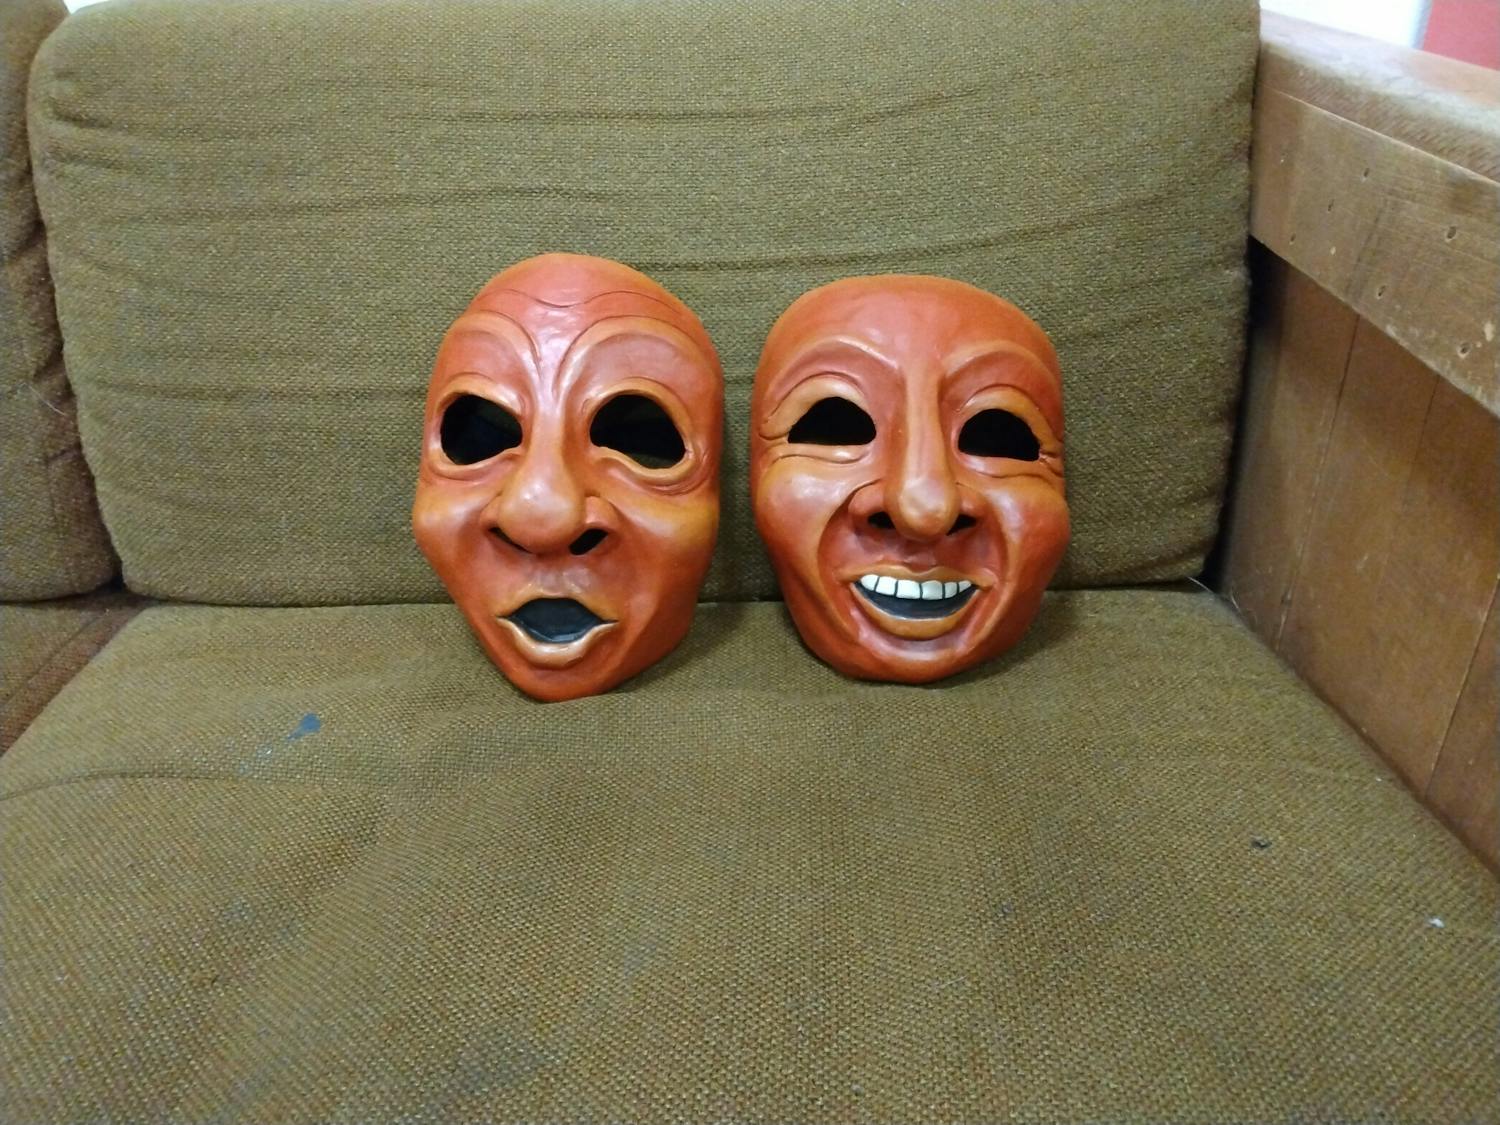 Emotion masks